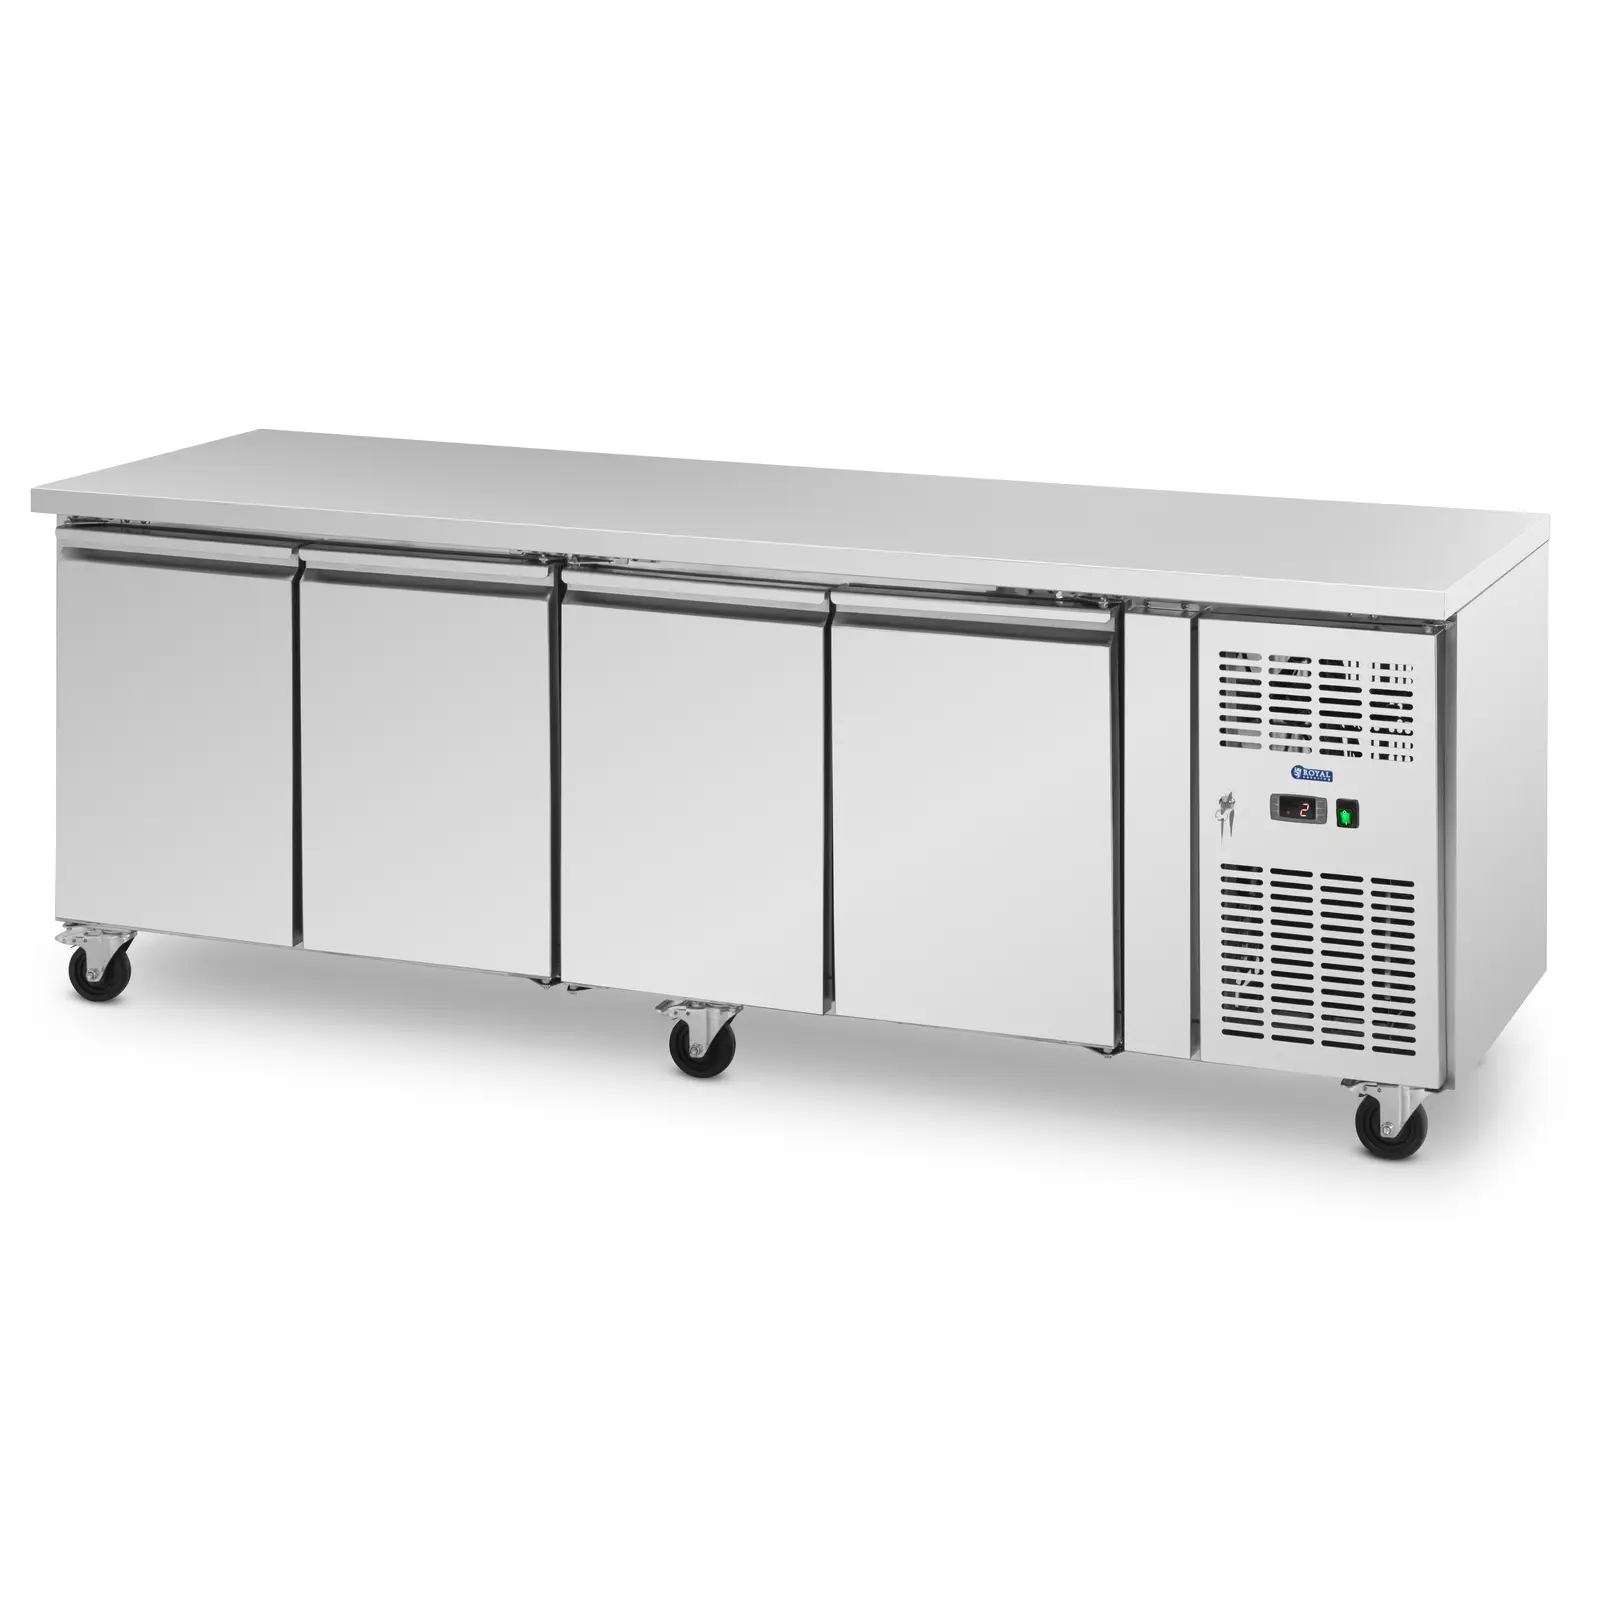 Κινητό ψυγείο σαλατιέρας - 550 l - 4 διαμερίσματα - 223 x 70 cm - κατηγορία B - ανοξείδωτο ατσάλι - Royal Catering